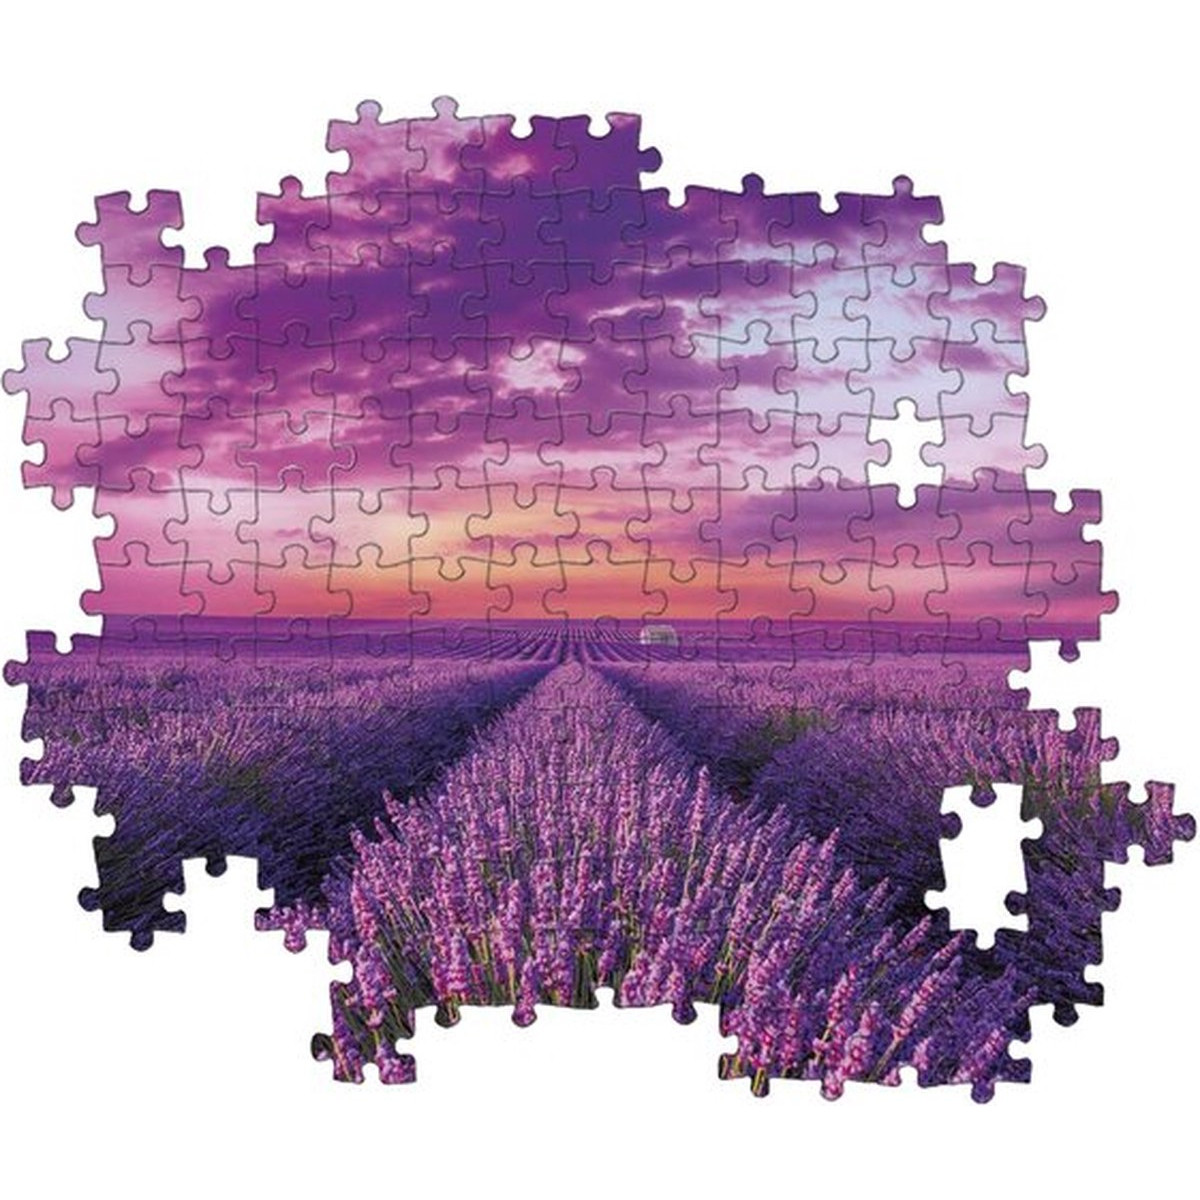 CLEMENTONI Puzzle Lavendel Feld 98450 Teile) (1000